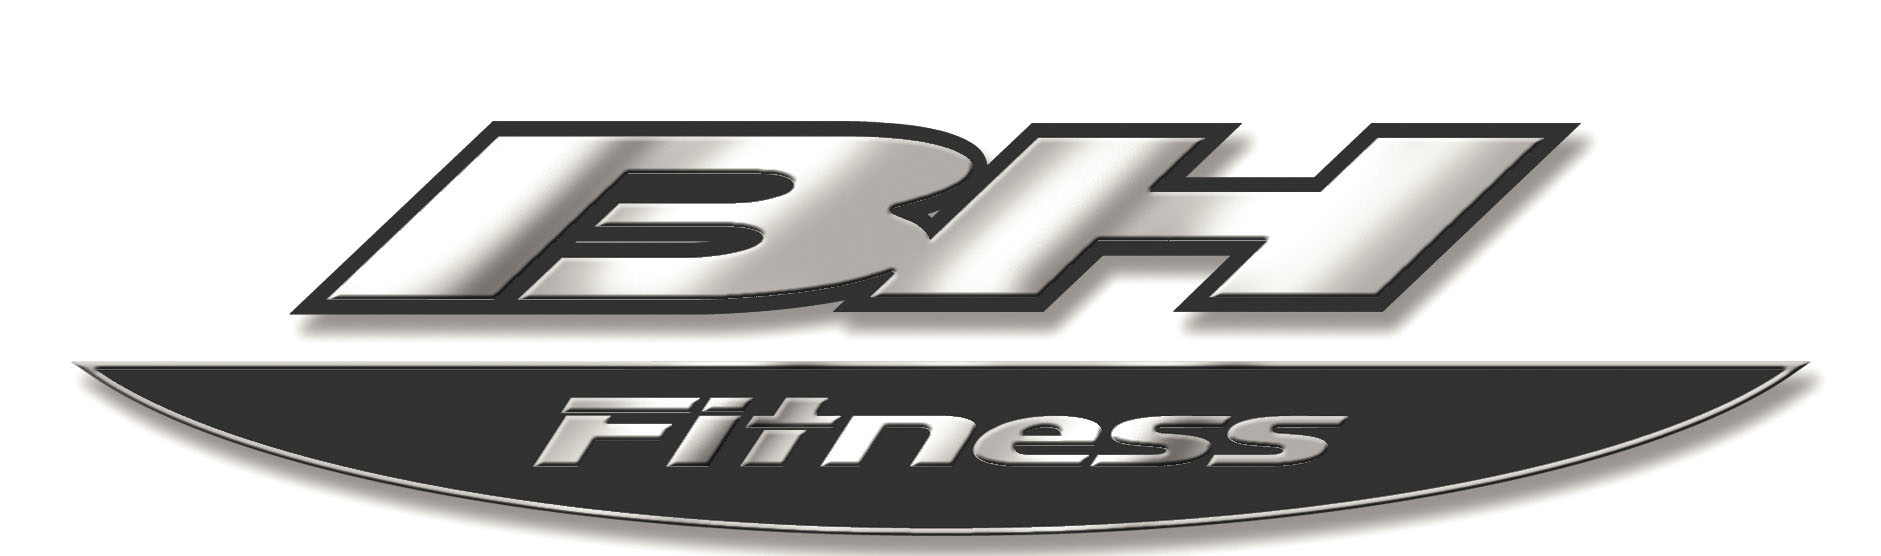 BH Fitness für Heimfitness-Sportgeräte wird gegründet